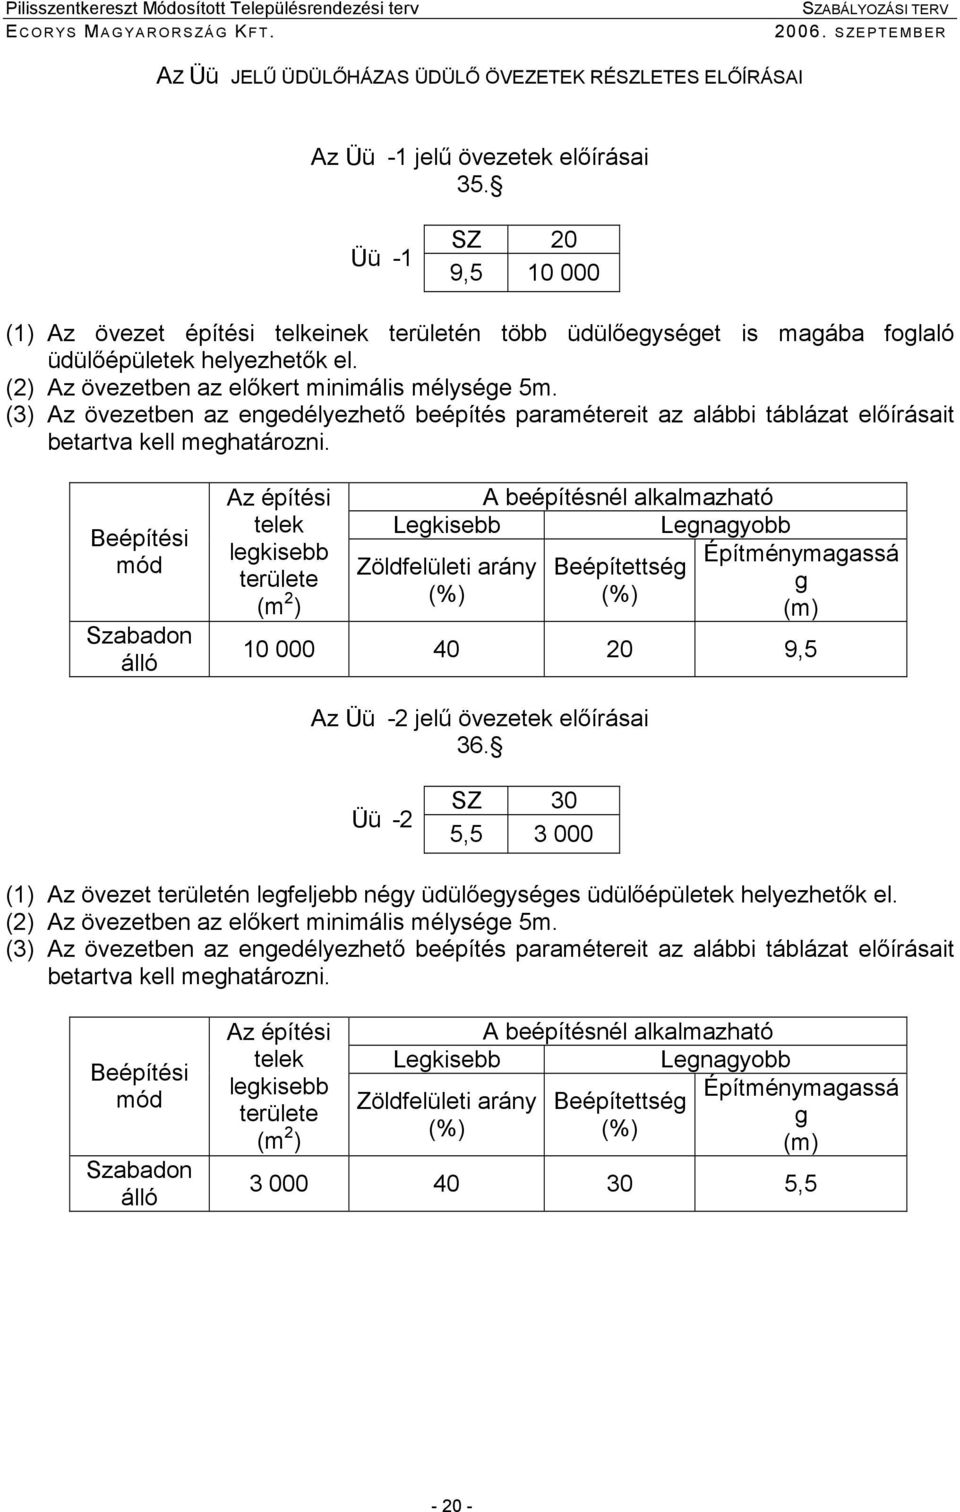 (3) Az övezetben az enedélyezhetı beépítés paramétereit az alábbi táblázat elıírásait betartva kell mehatározni.